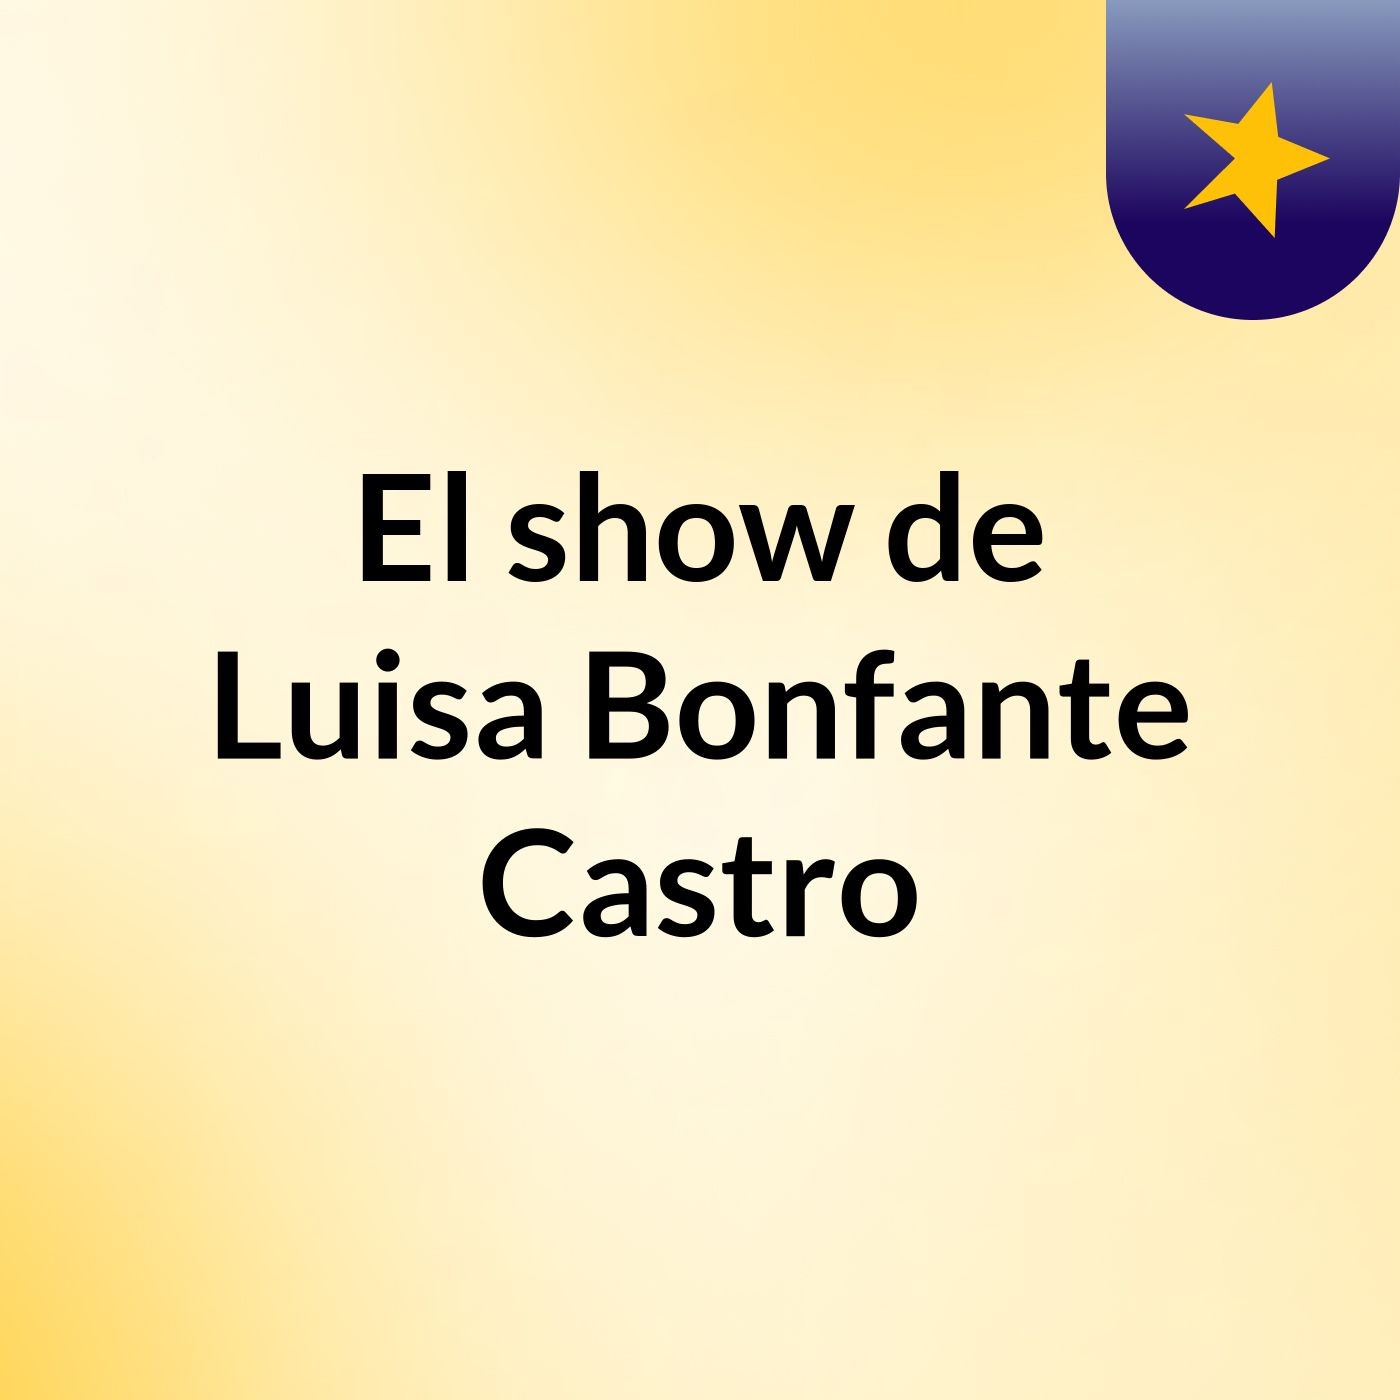 El show de Luisa Bonfante Castro